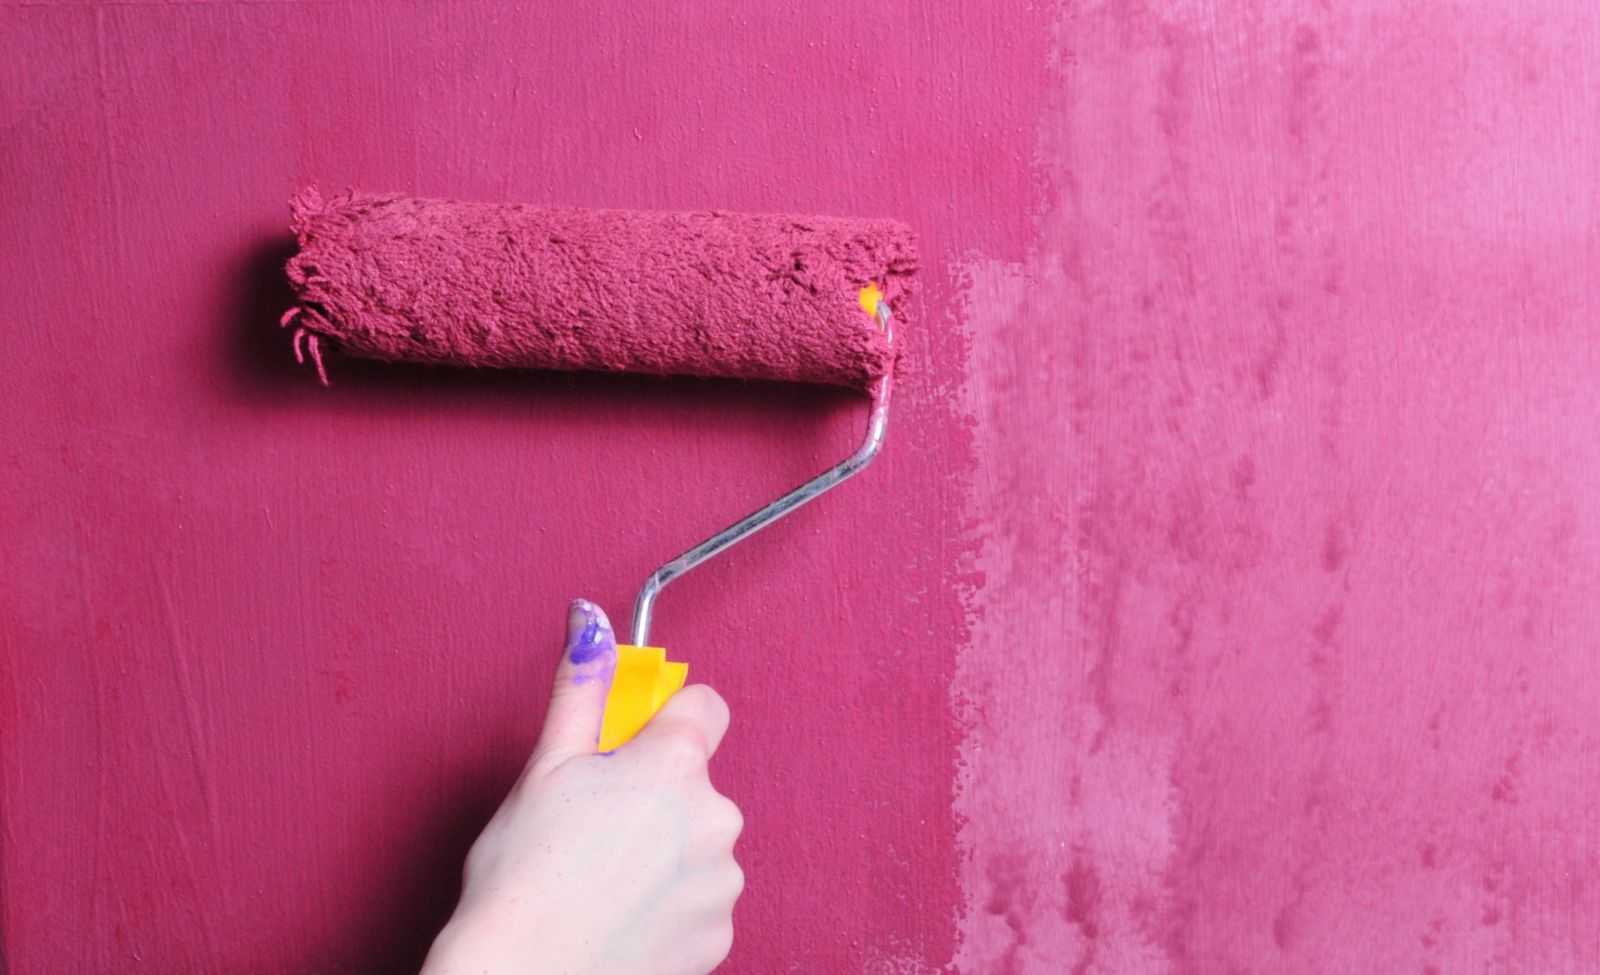 Как подготовить стены к покраске: детальное описание каждого этапа работы